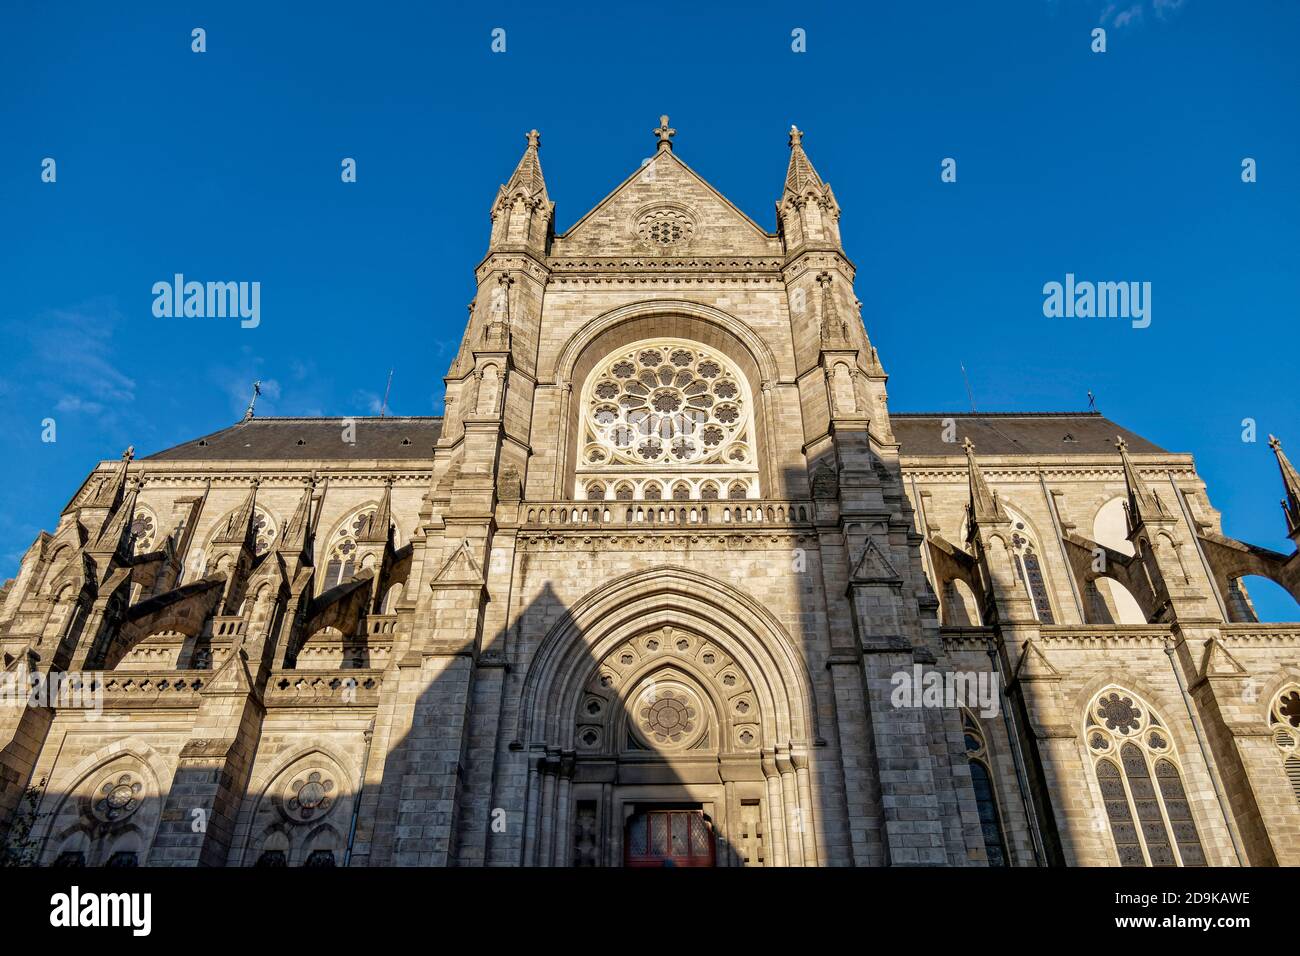 Rennes, Frankreich - die Kathedrale Saint-Pierre de Rennes im alten Stadtzentrum | Rennes, cathedral, Brittany, France Stock Photo